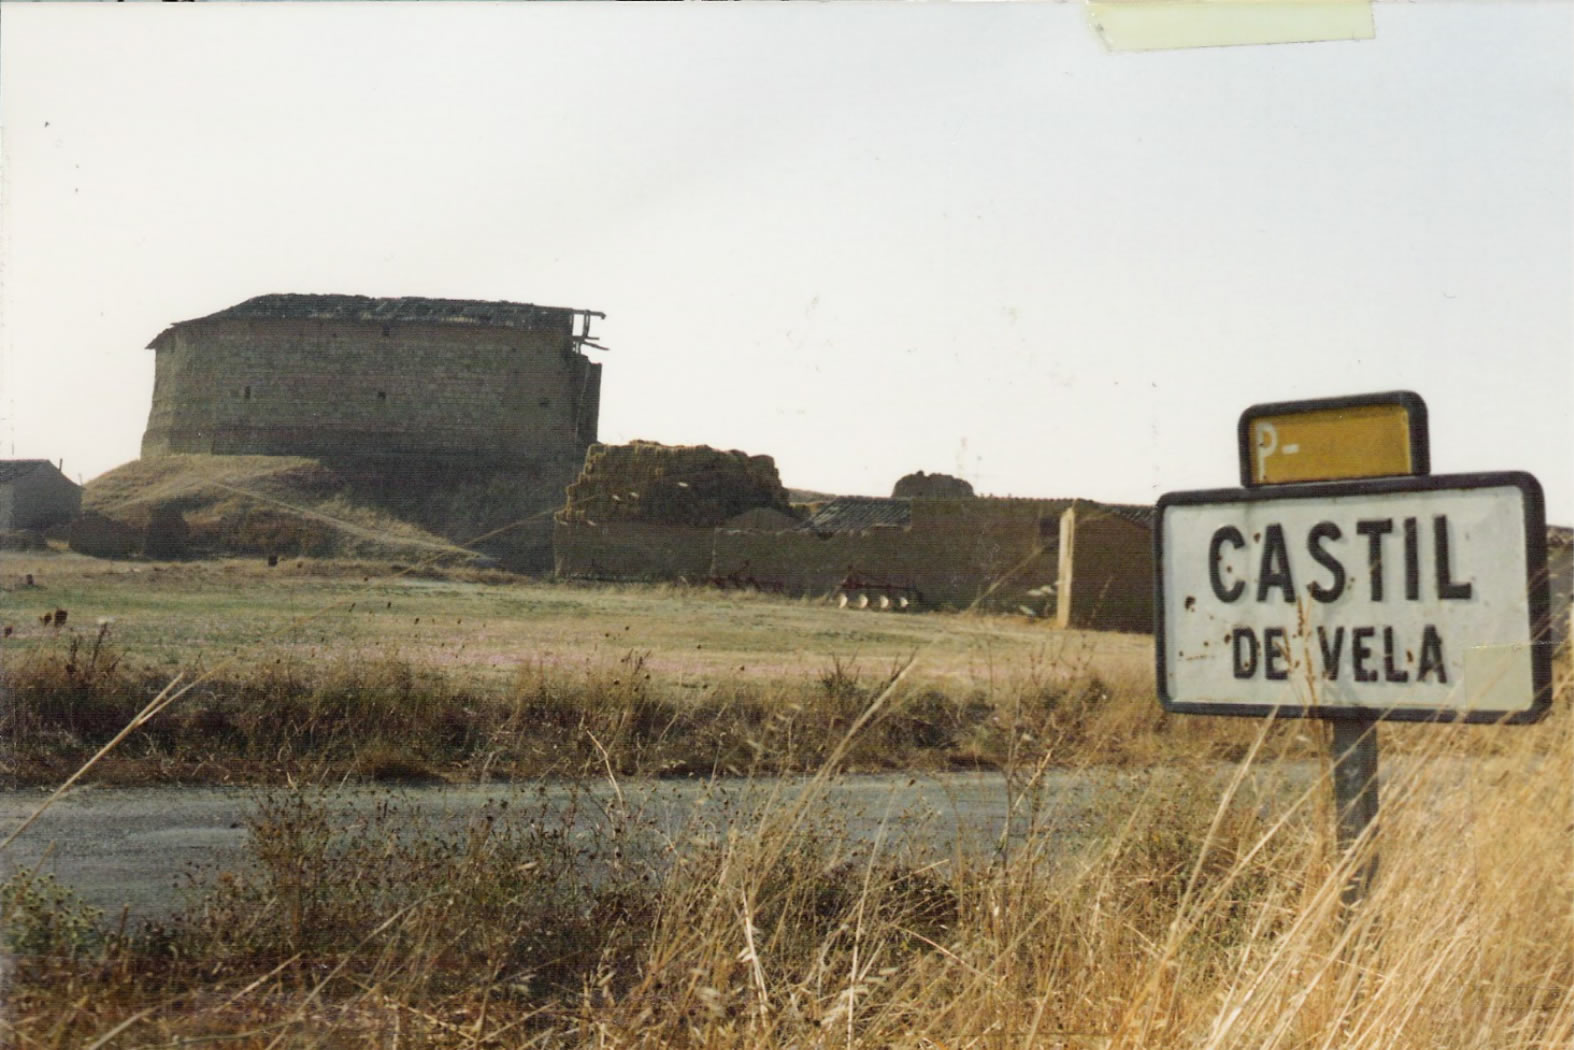 1-Castillo-24-9-1988